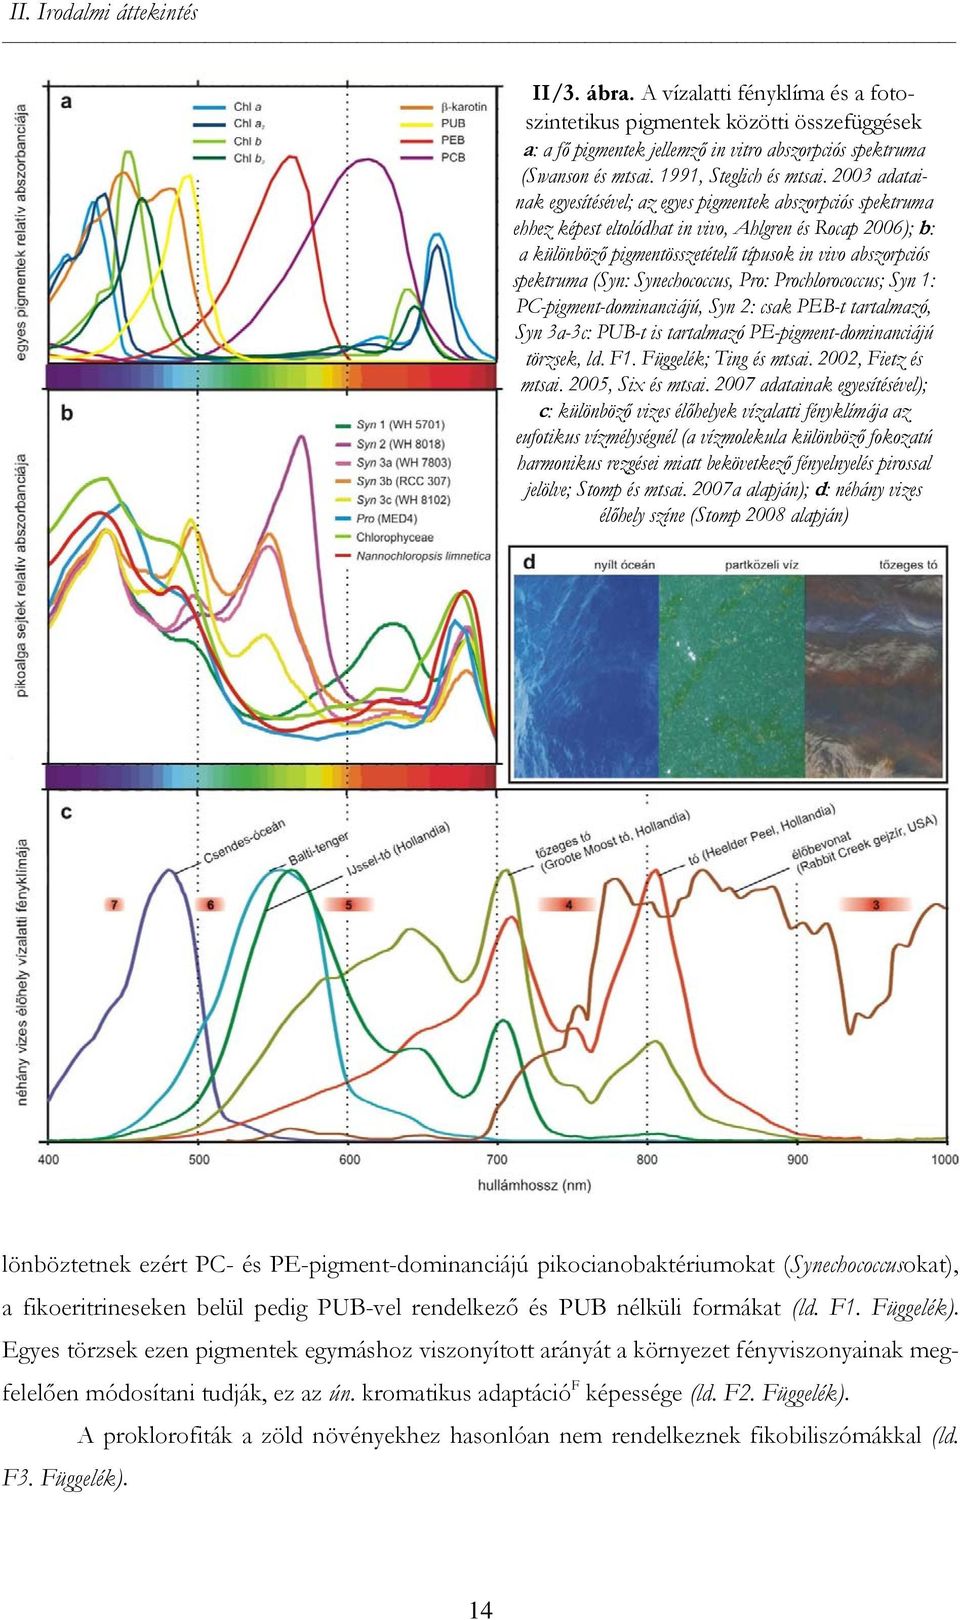 2003 adatainak egyesítésével; az egyes pigmentek abszorpciós spektruma ehhez képest eltolódhat in vivo, Ahlgren és Rocap 2006); b: a különböző pigmentösszetételű típusok in vivo abszorpciós spektruma